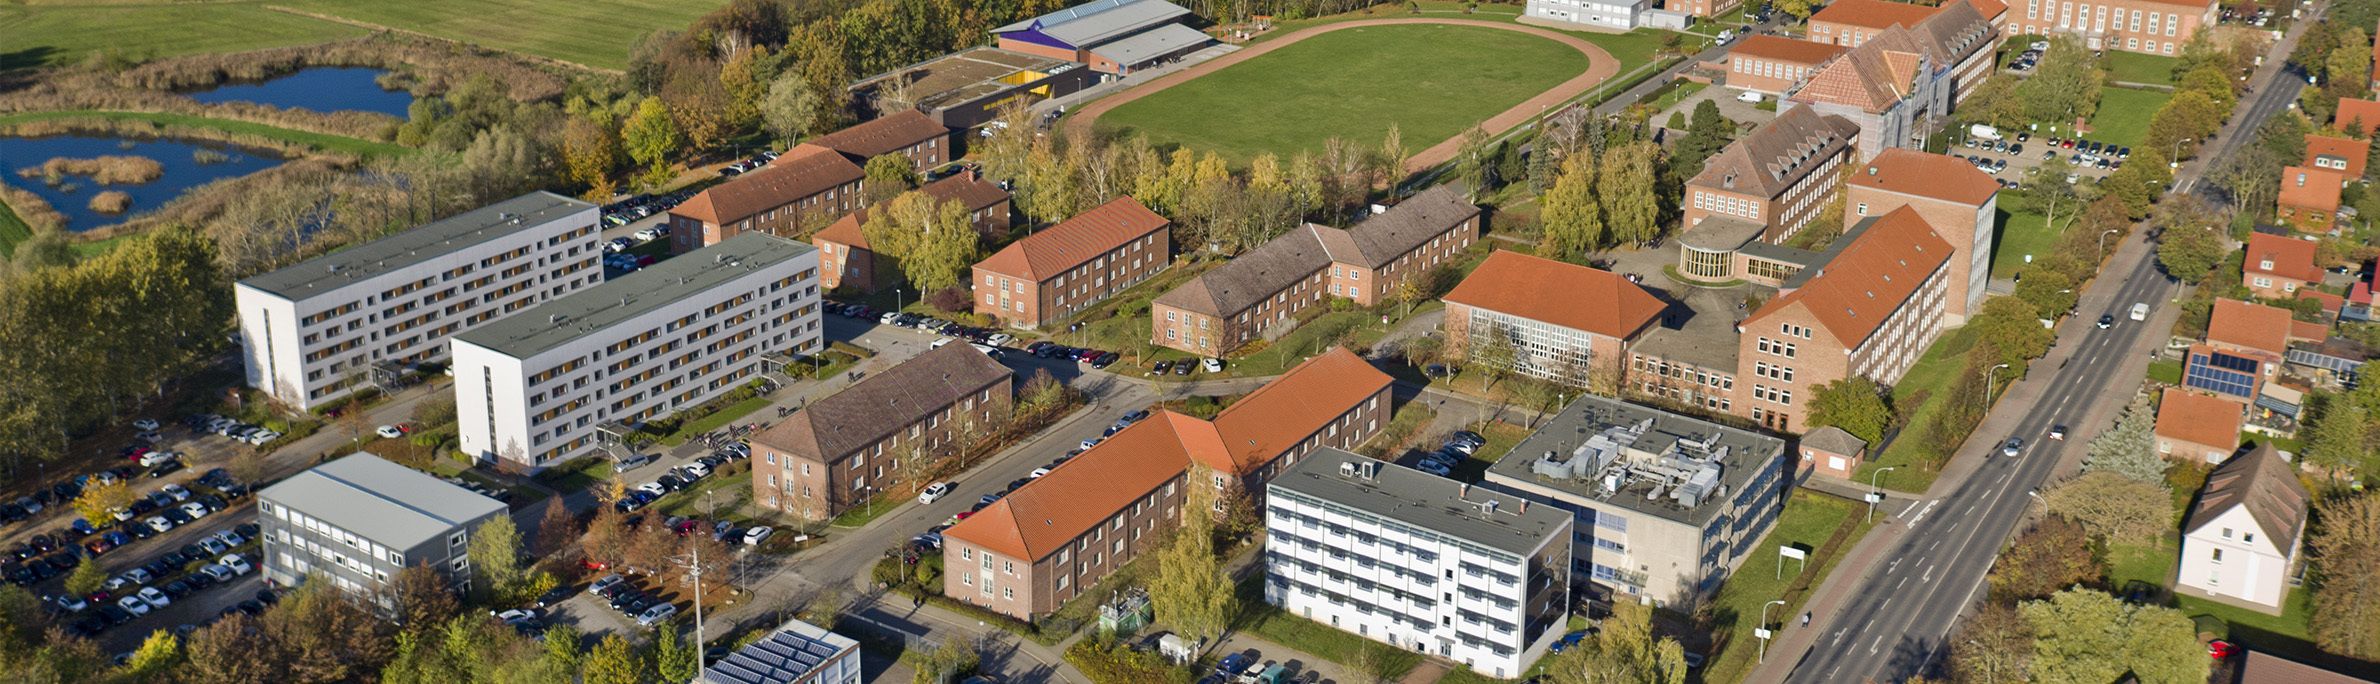 Modernste Raumschießanlage Norddeutschlands feierlich übergeben ©2019 Jens Tirgrath, copter-drone